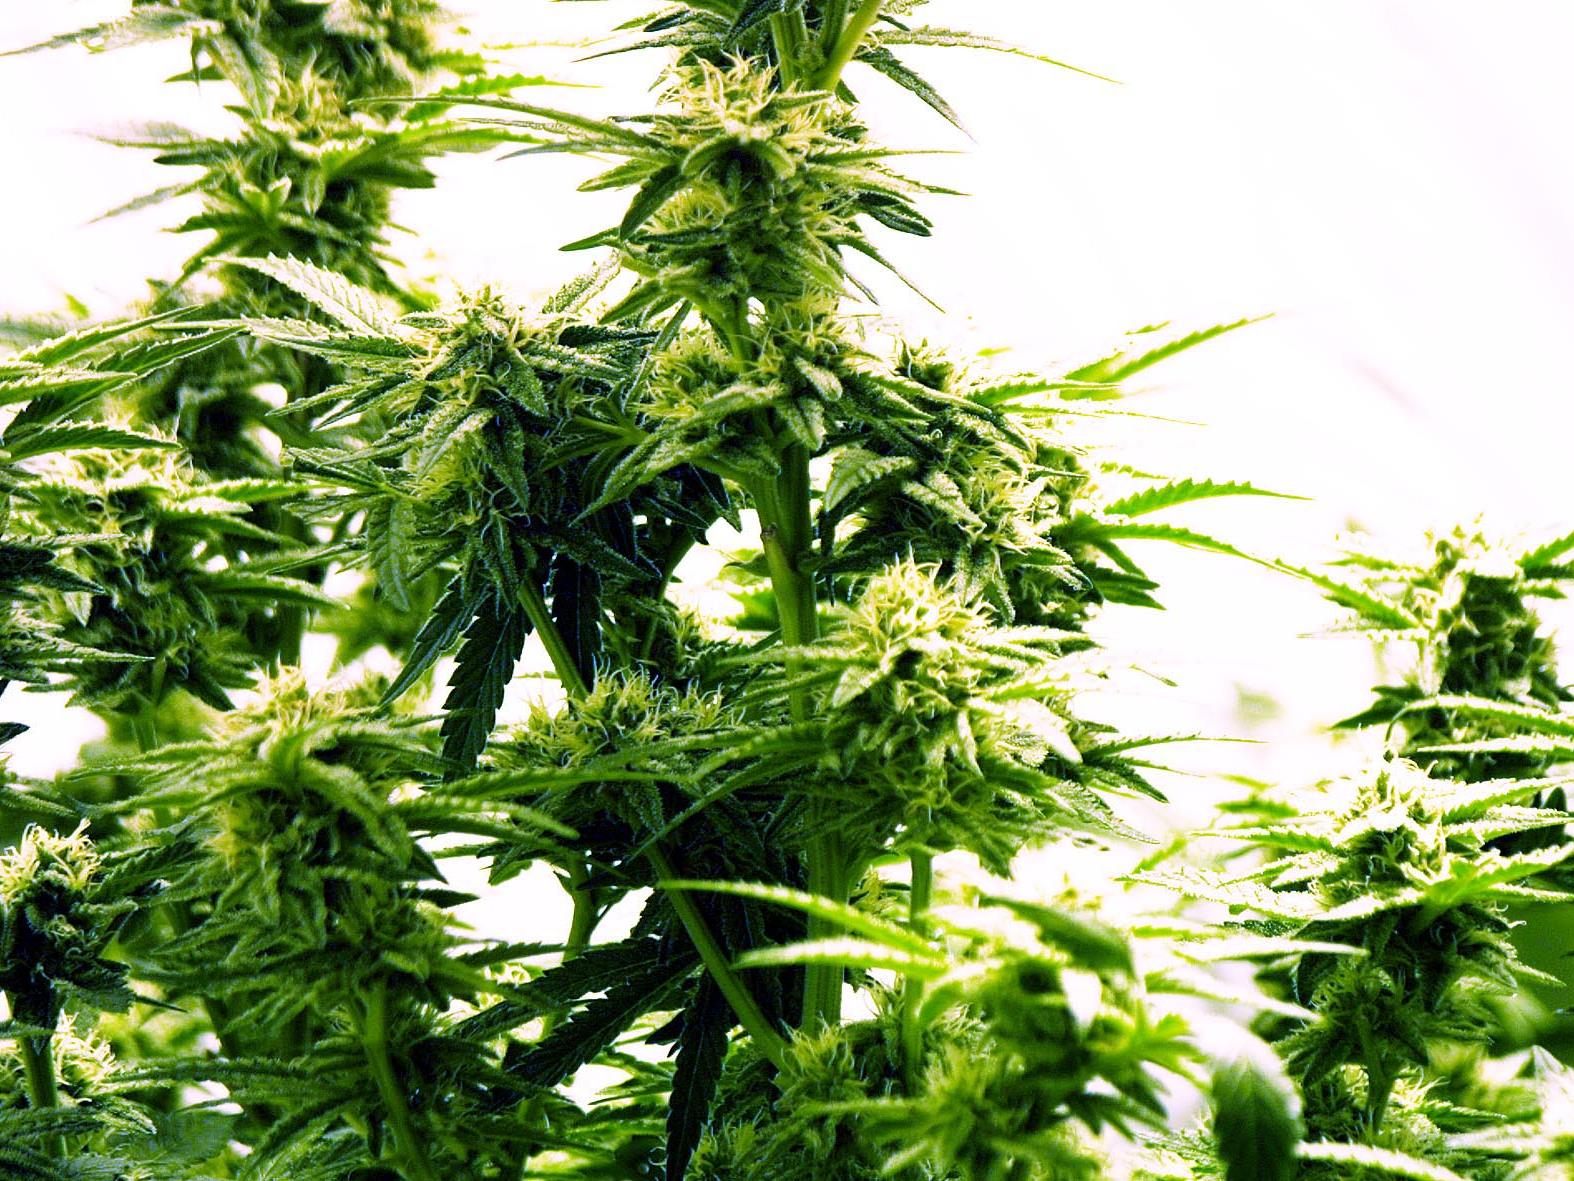 Insgesamt stellte die Polizei 42 Cannabispflanzen sicher.